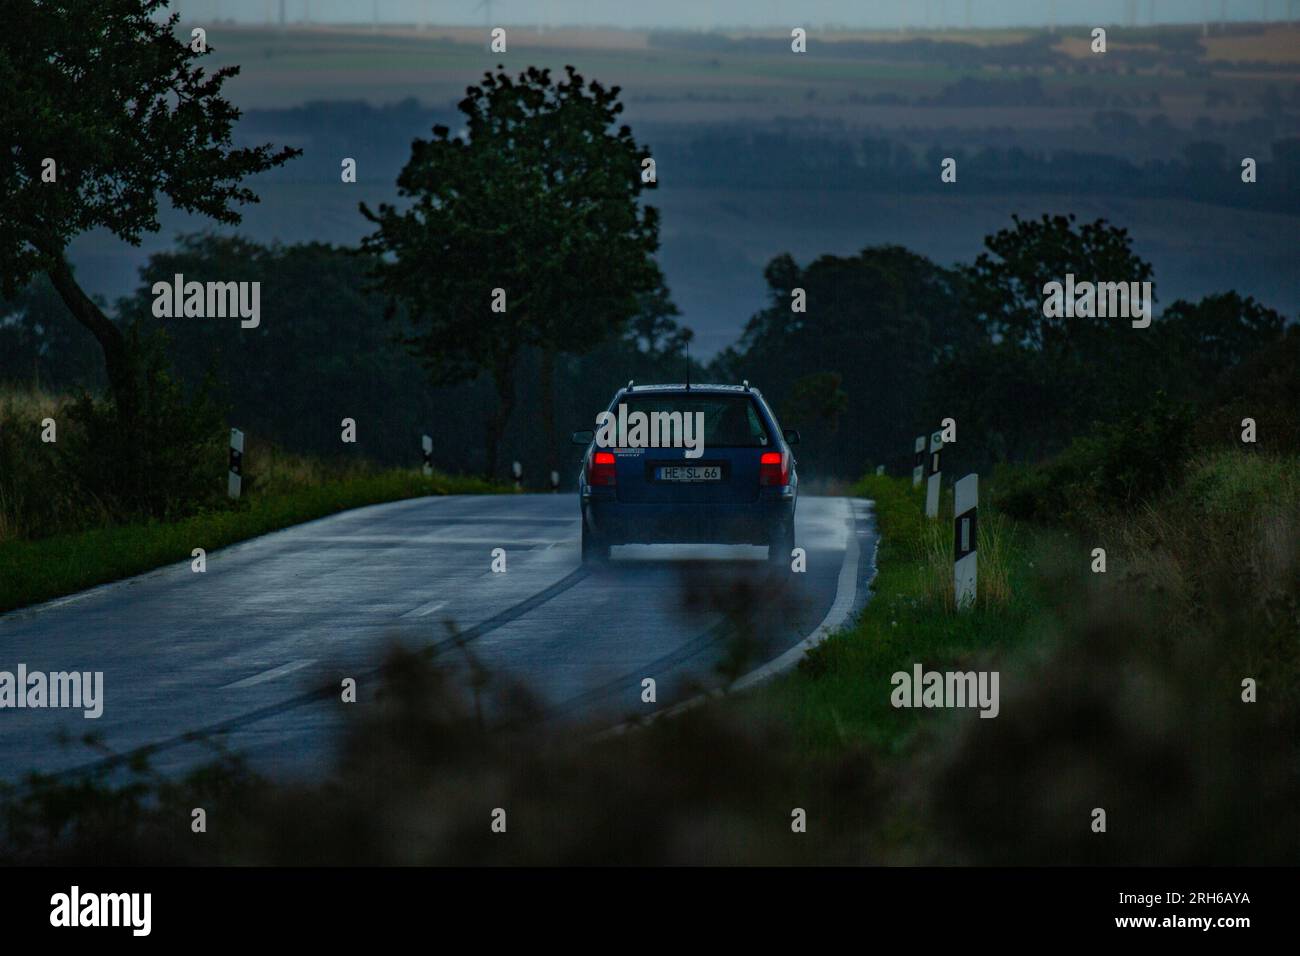 Ein Auto auf einer Landstrasse bei starkem Regen. Stock Photo